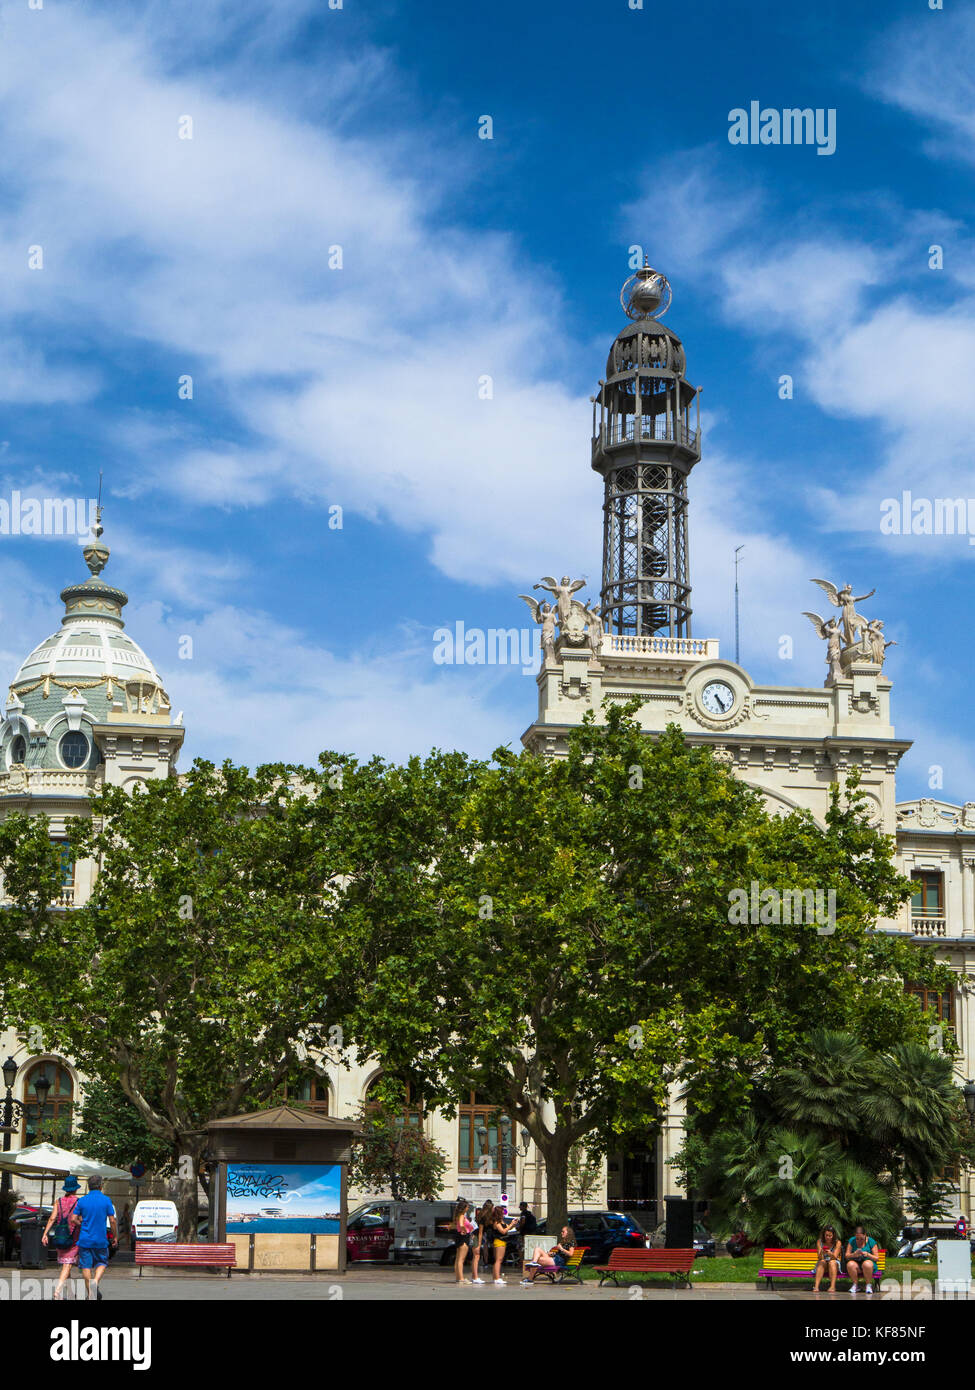 Town Hall Square (Plaza del Ayuntamiento) with the Central Post Office (Edificio de Correos) in the background, Valencia, Spain Stock Photo